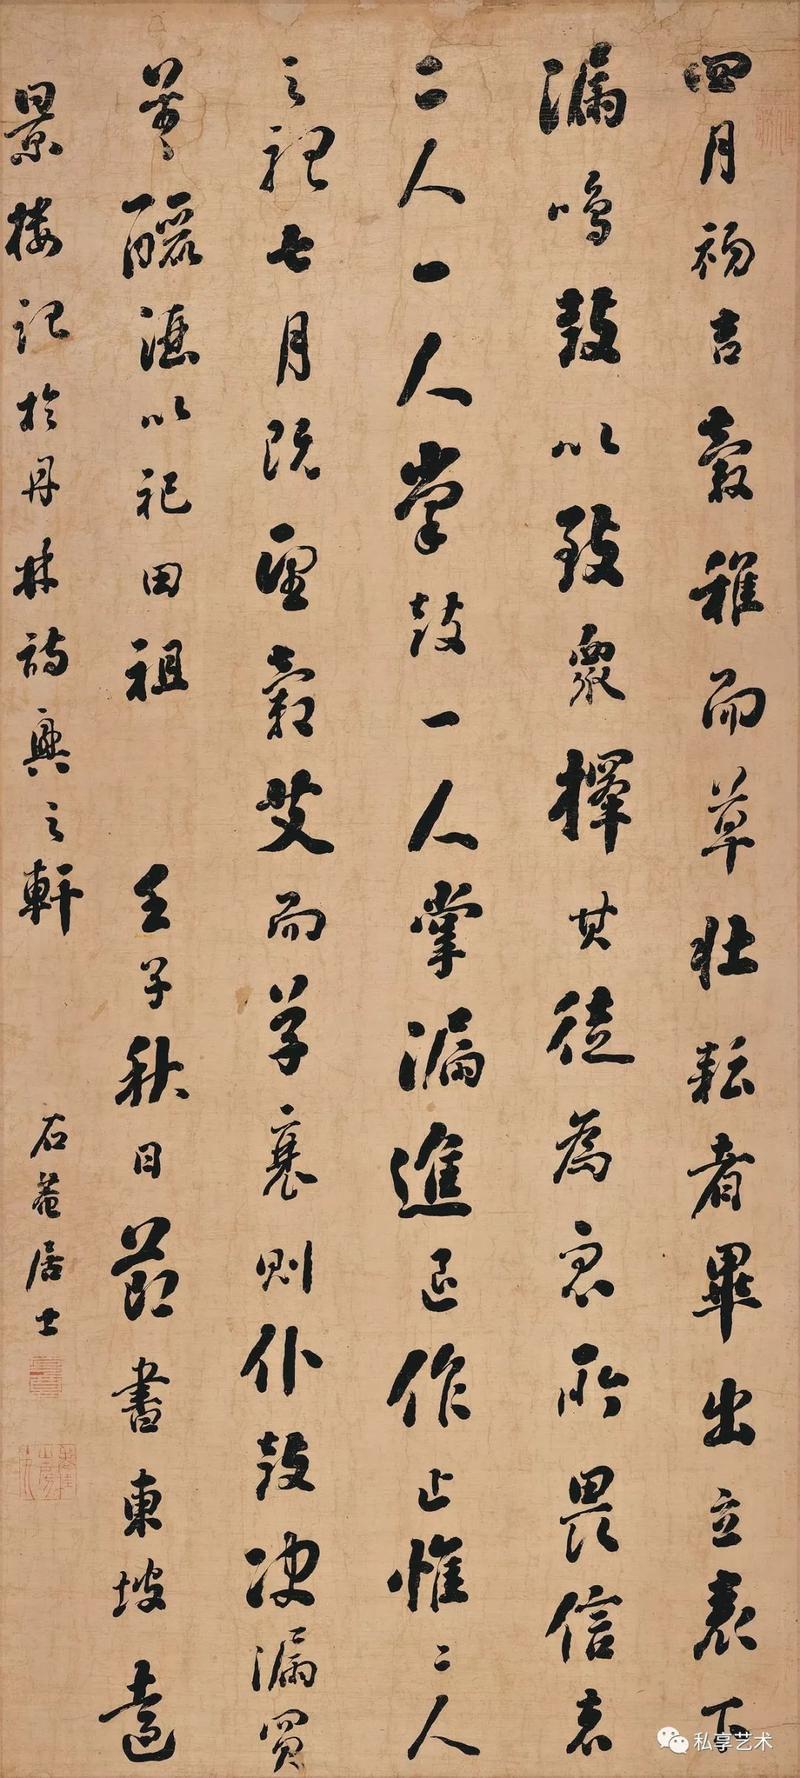 辽宁省博物馆藏丨刘墉书法《行书远景楼记轴》